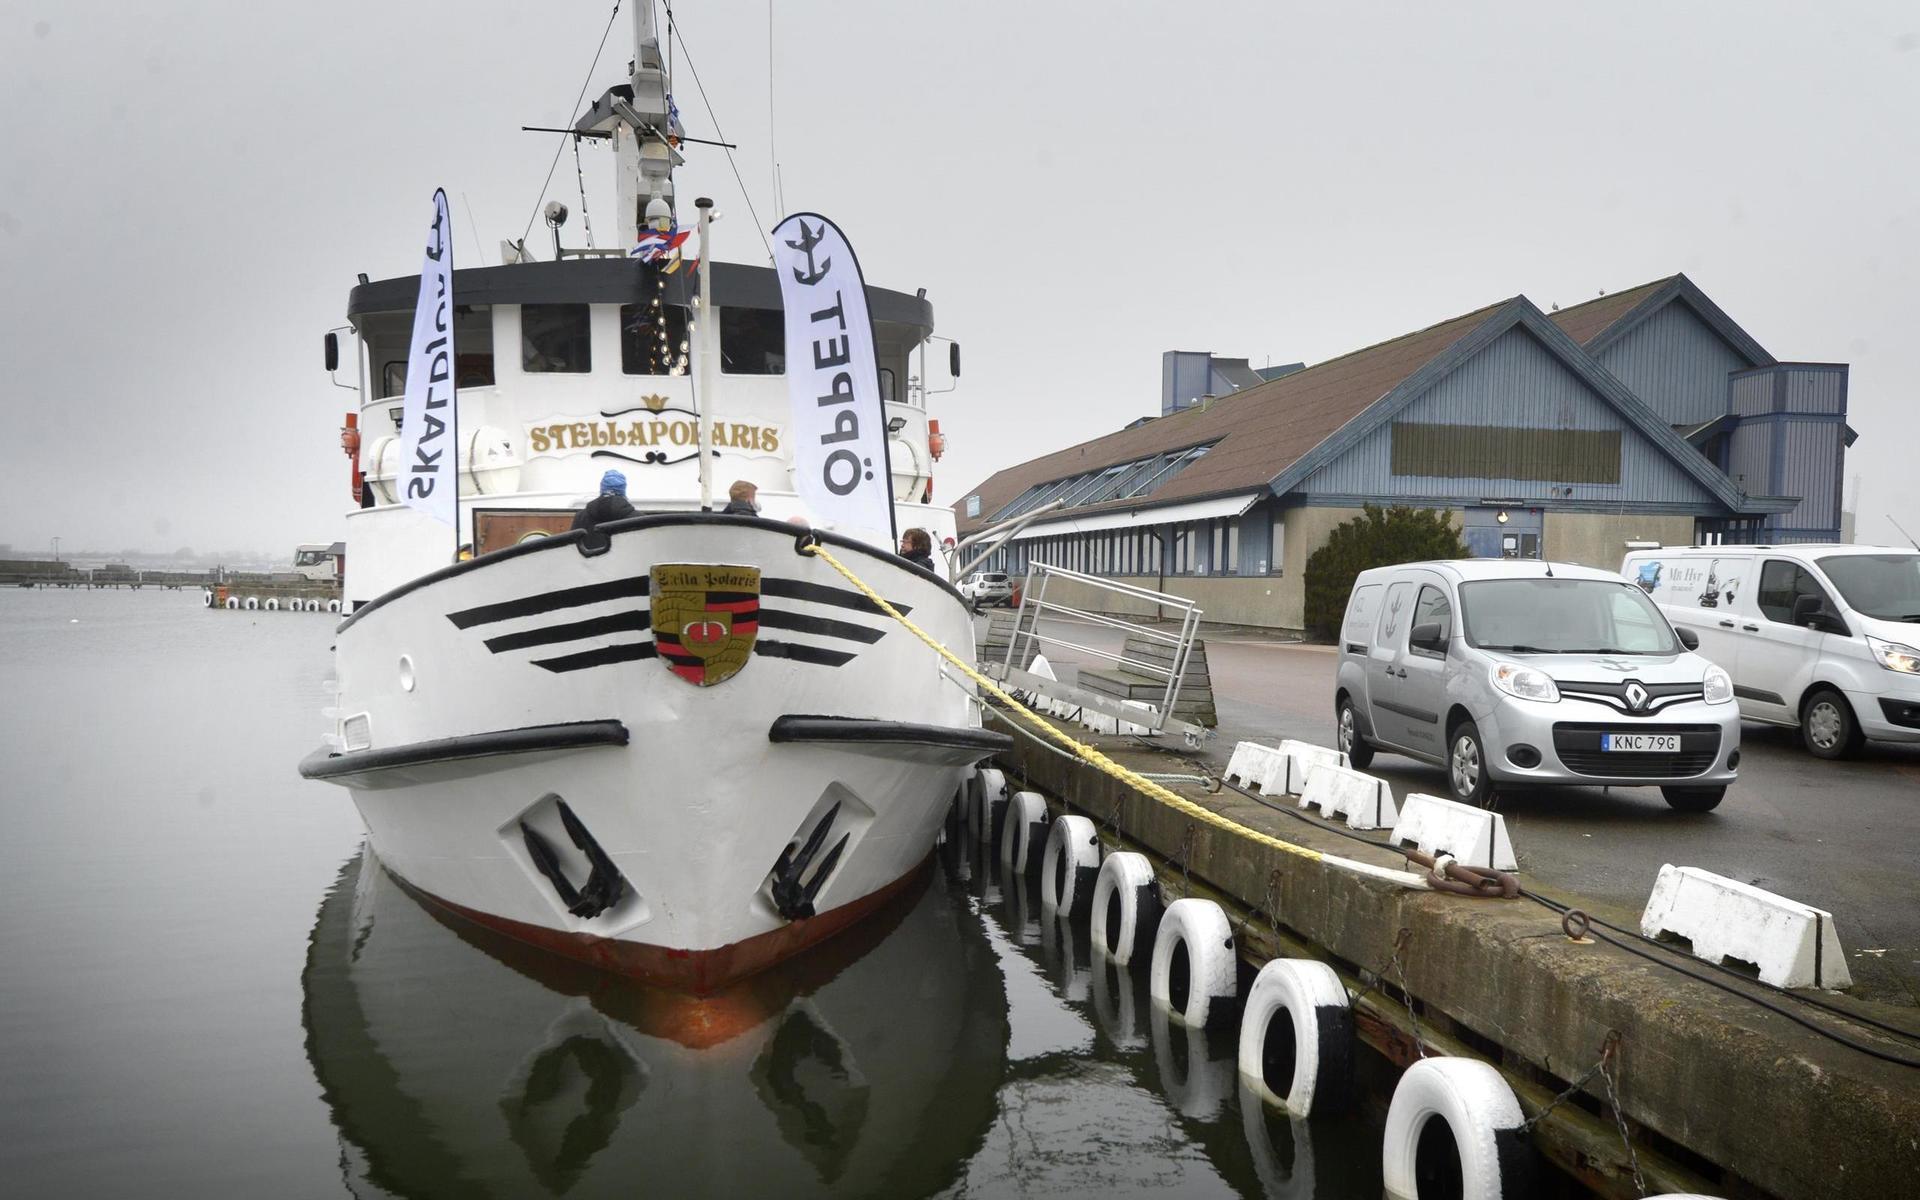 Varbergs innerhamn har fått ett nytt inslag – restaurangbåten Stella Polaris.